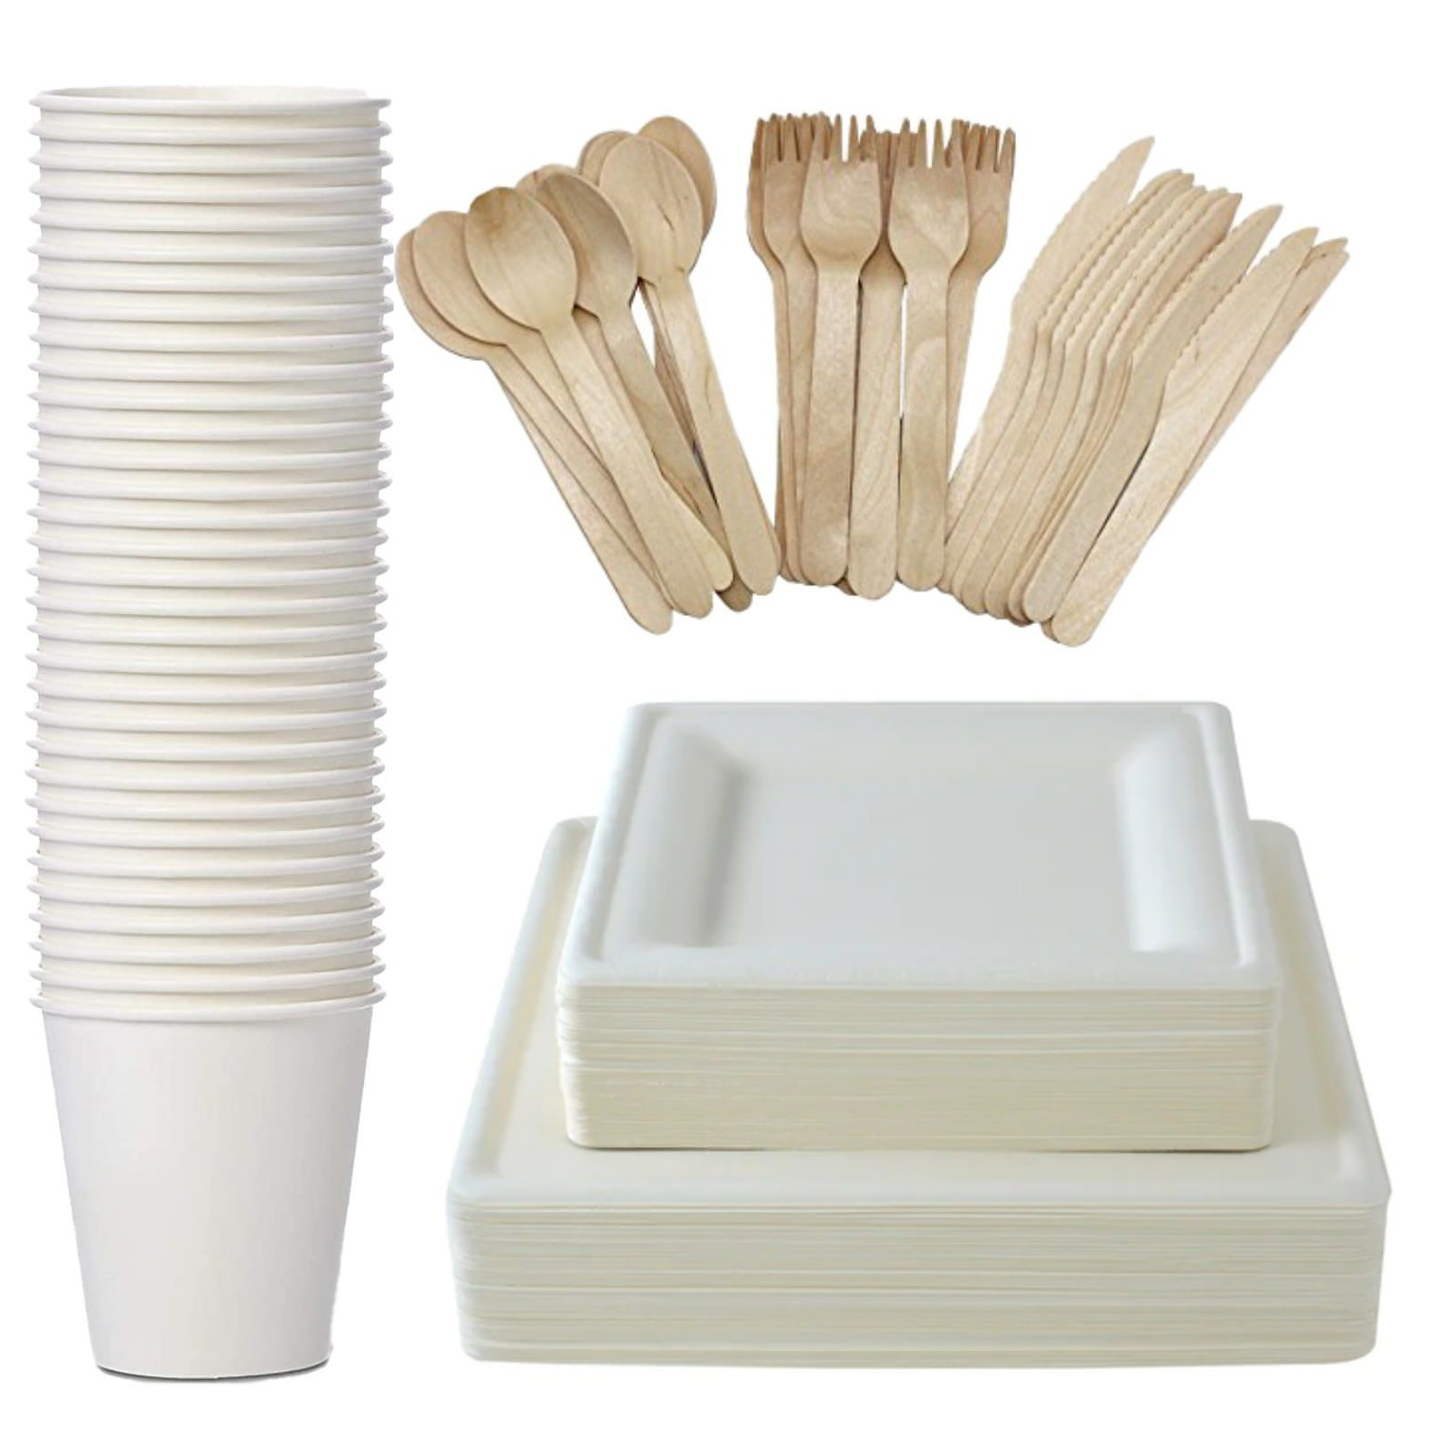 Wiseware - Cucchiaio usa e getta in legno di betulla, 1000 pezzi, 16,5 cm,  biodegradabili, usa e getta, naturale, stabile, ecologico con confezione